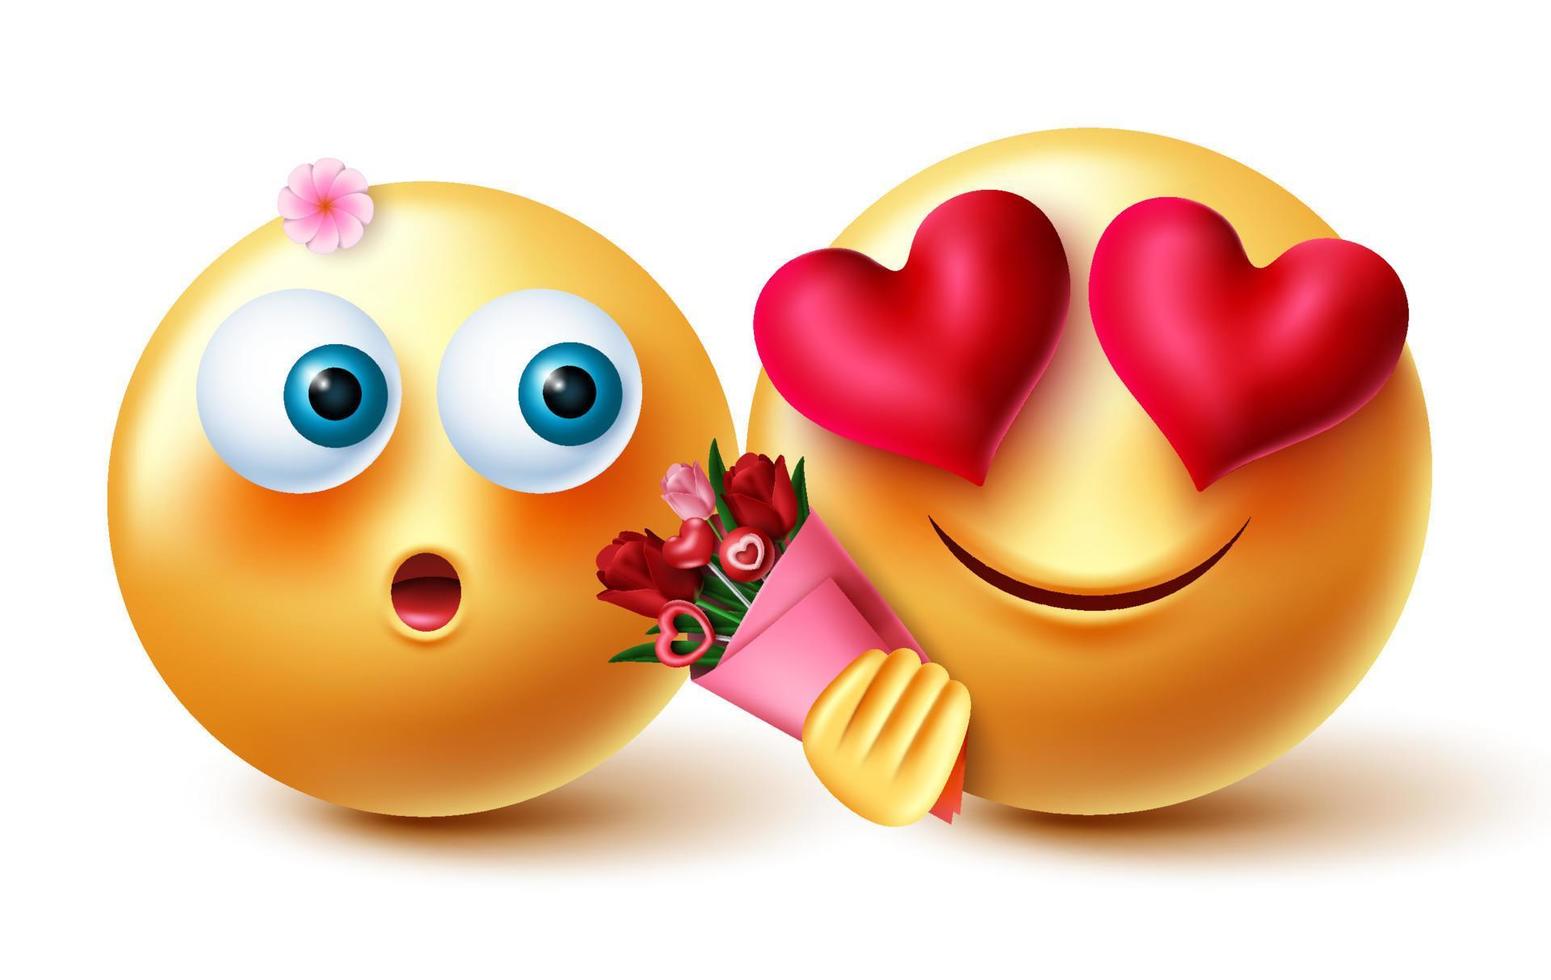 Diseño de concepto de vector de San Valentín de pareja de emoji. Personaje de emojis inlove 3d con ramo de flores para emoticonos de celebración de San Valentín y aniversario. ilustración vectorial.